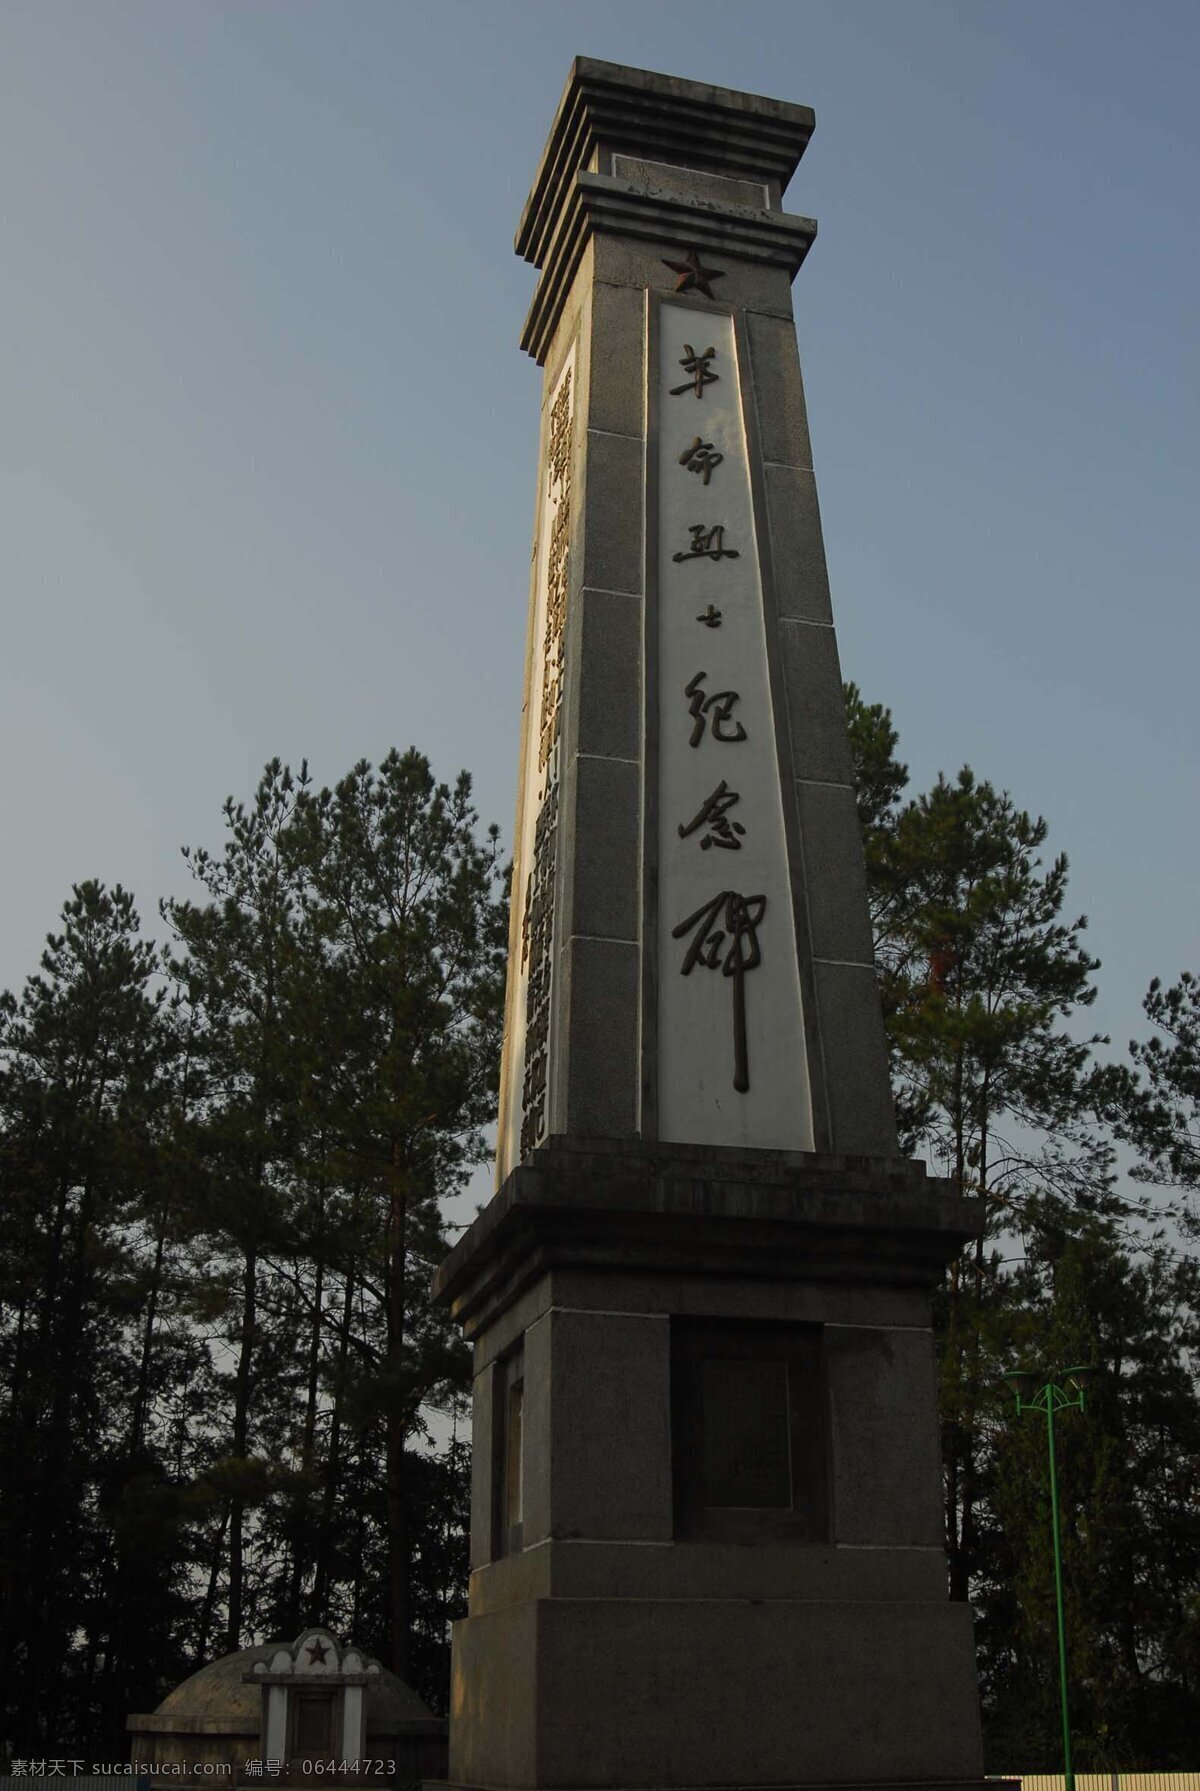 革命 烈士 纪念碑 革命烈士 全南县 公园 国内旅游 旅游摄影